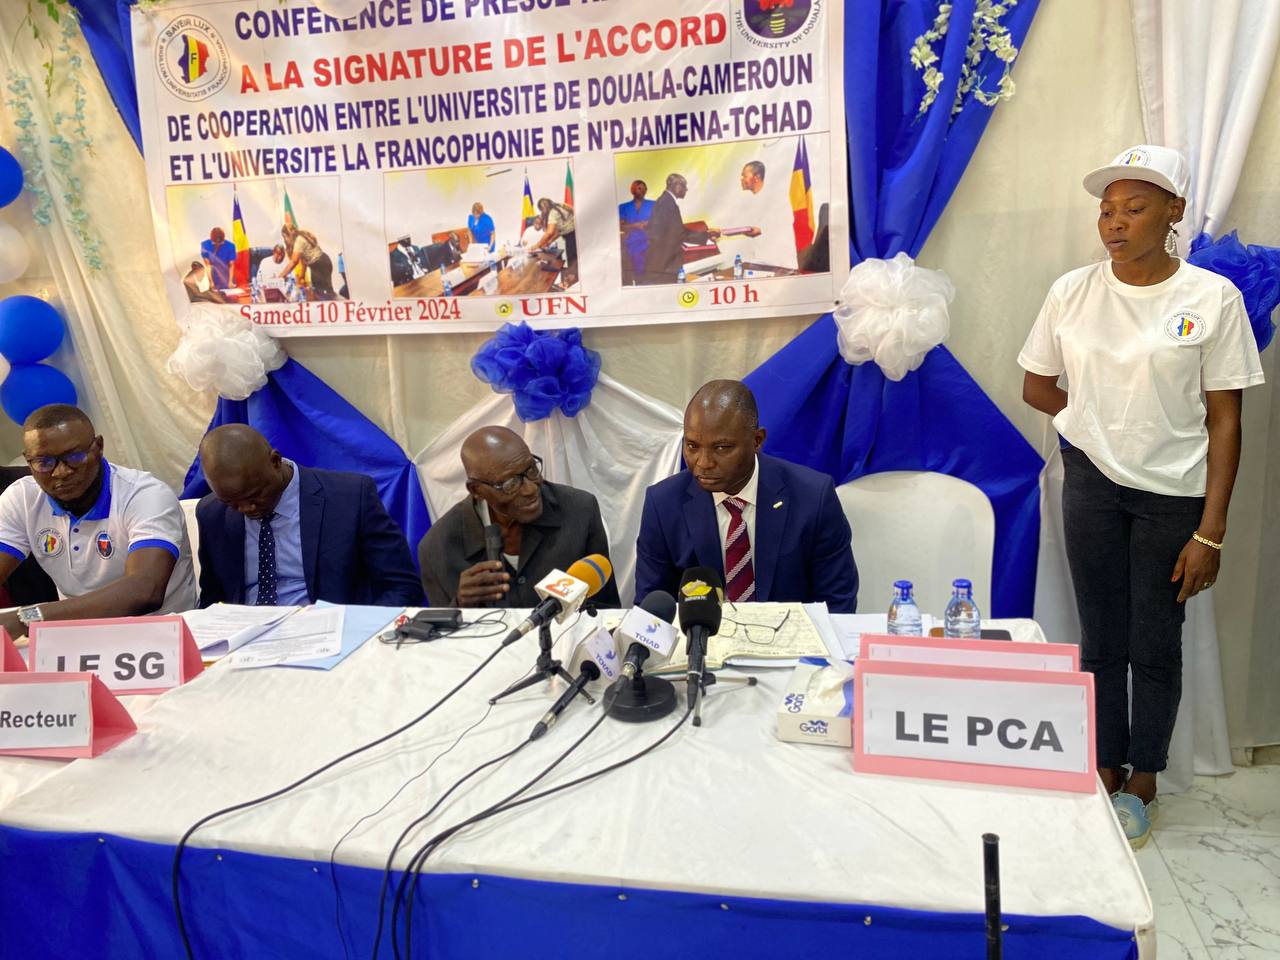 Éducation : Un accord de coopération entre l’université la Francophonie et l’université de Douala